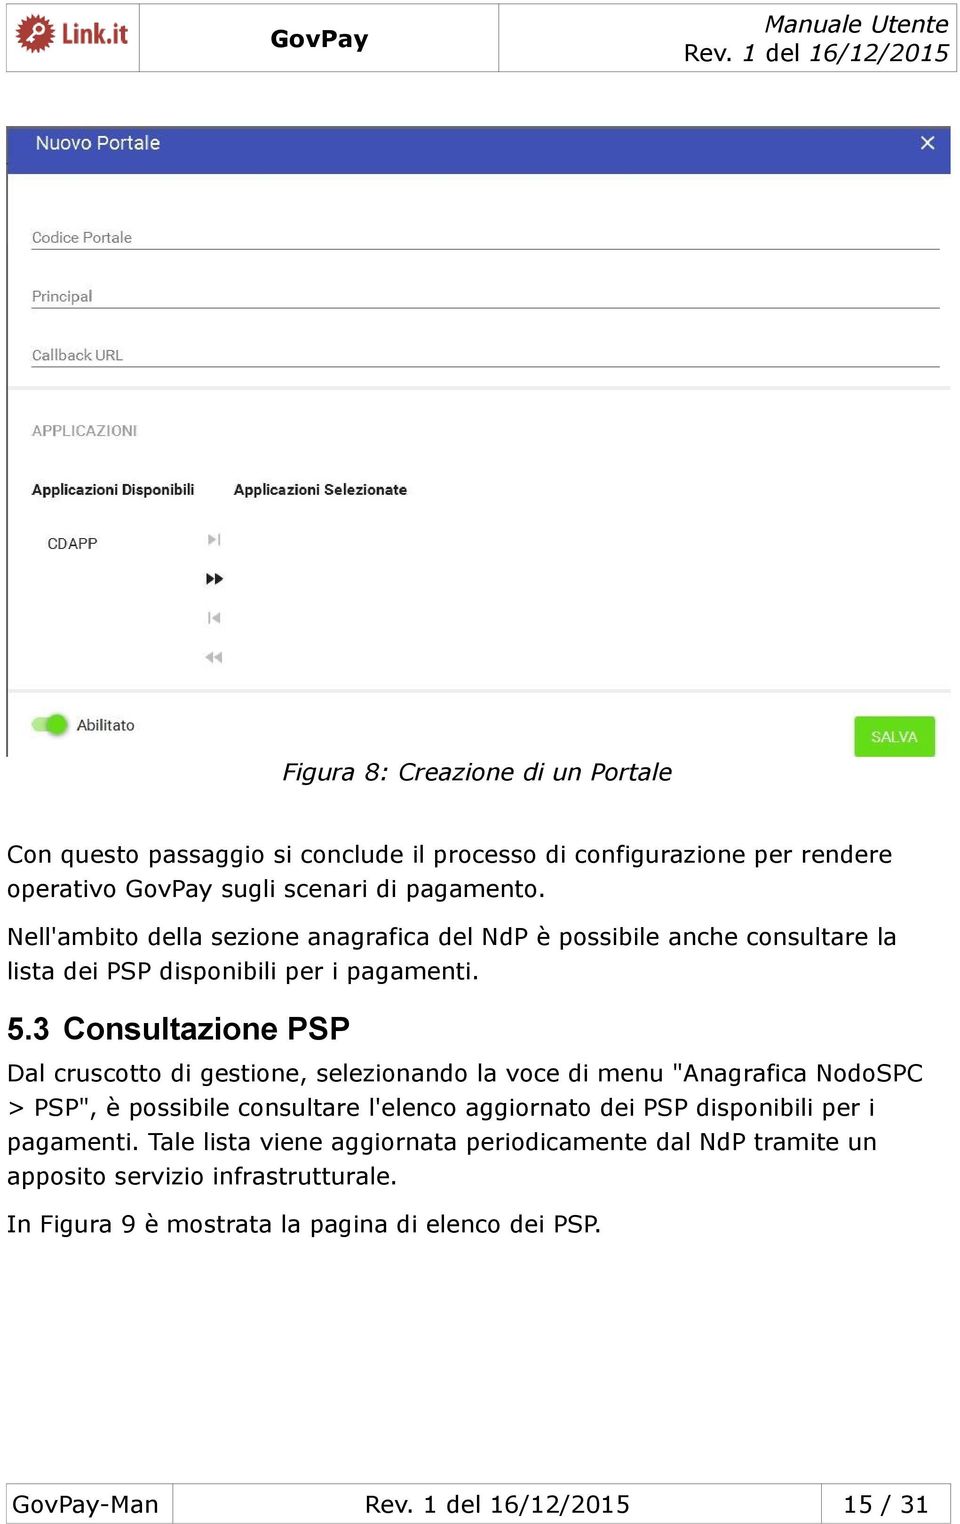 3 Consultazione PSP Dal cruscotto di gestione, selezionando la voce di menu "Anagrafica NodoSPC > PSP", è possibile consultare l'elenco aggiornato dei PSP